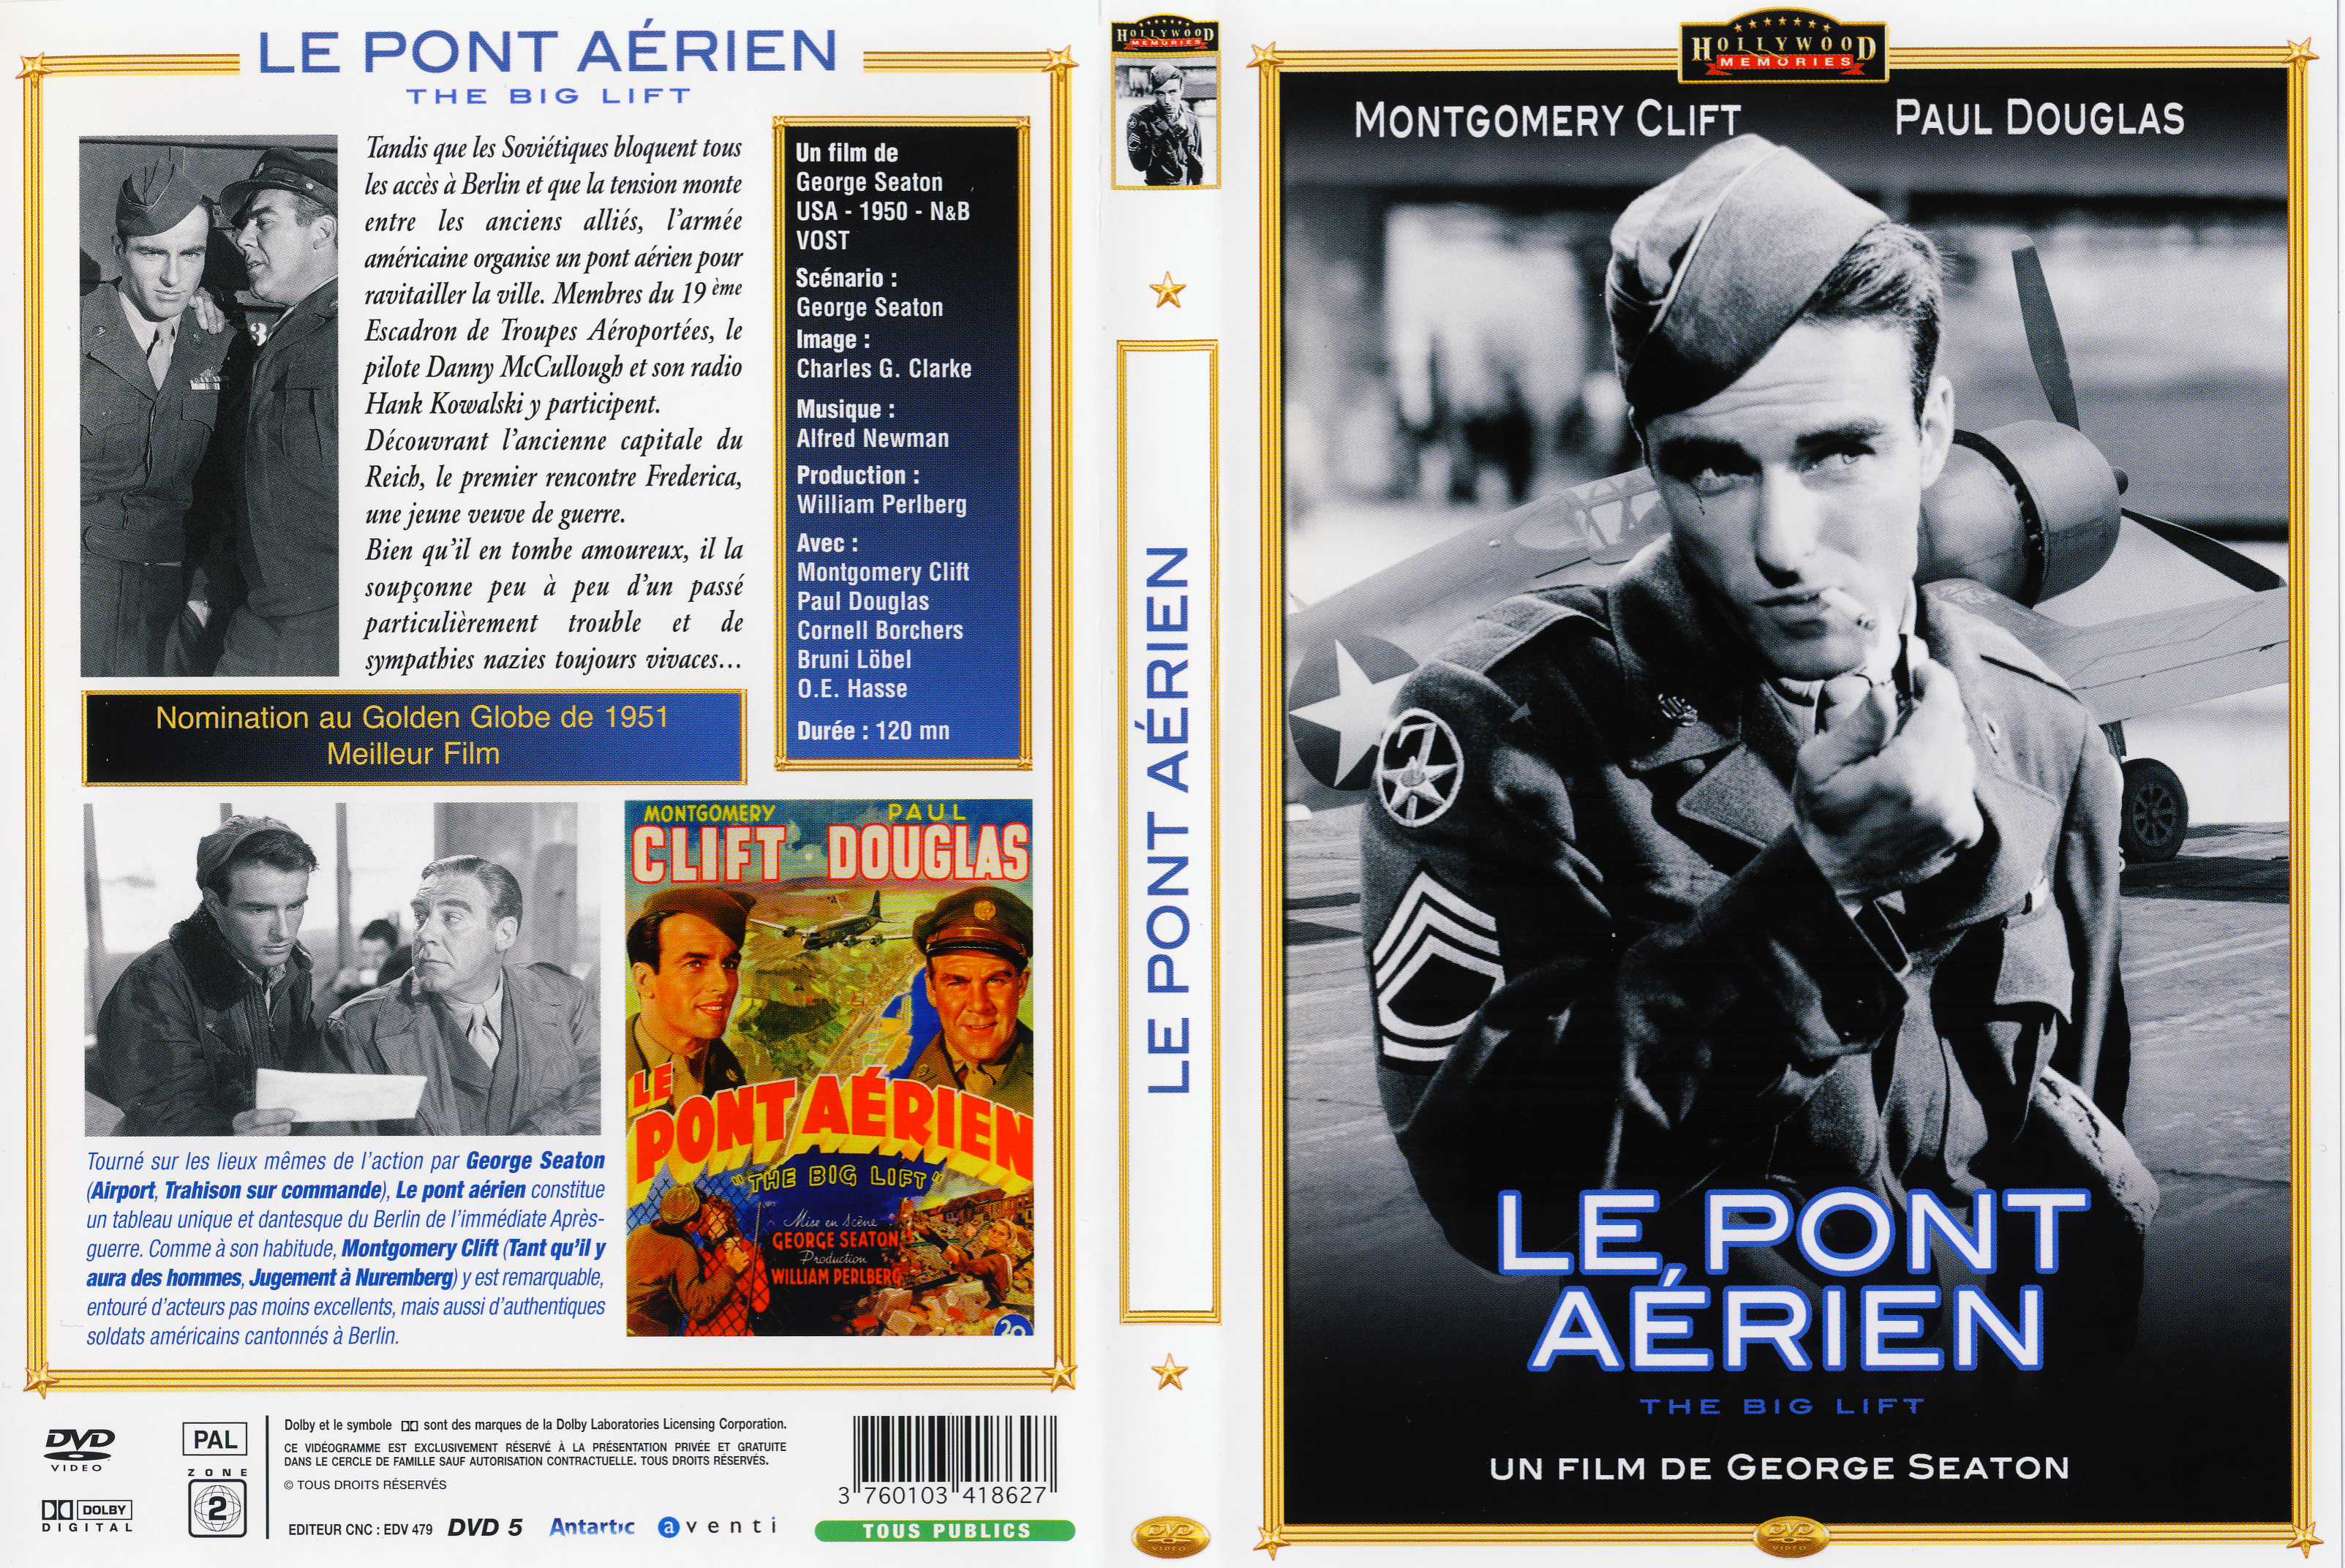 Jaquette DVD Le Pont arien